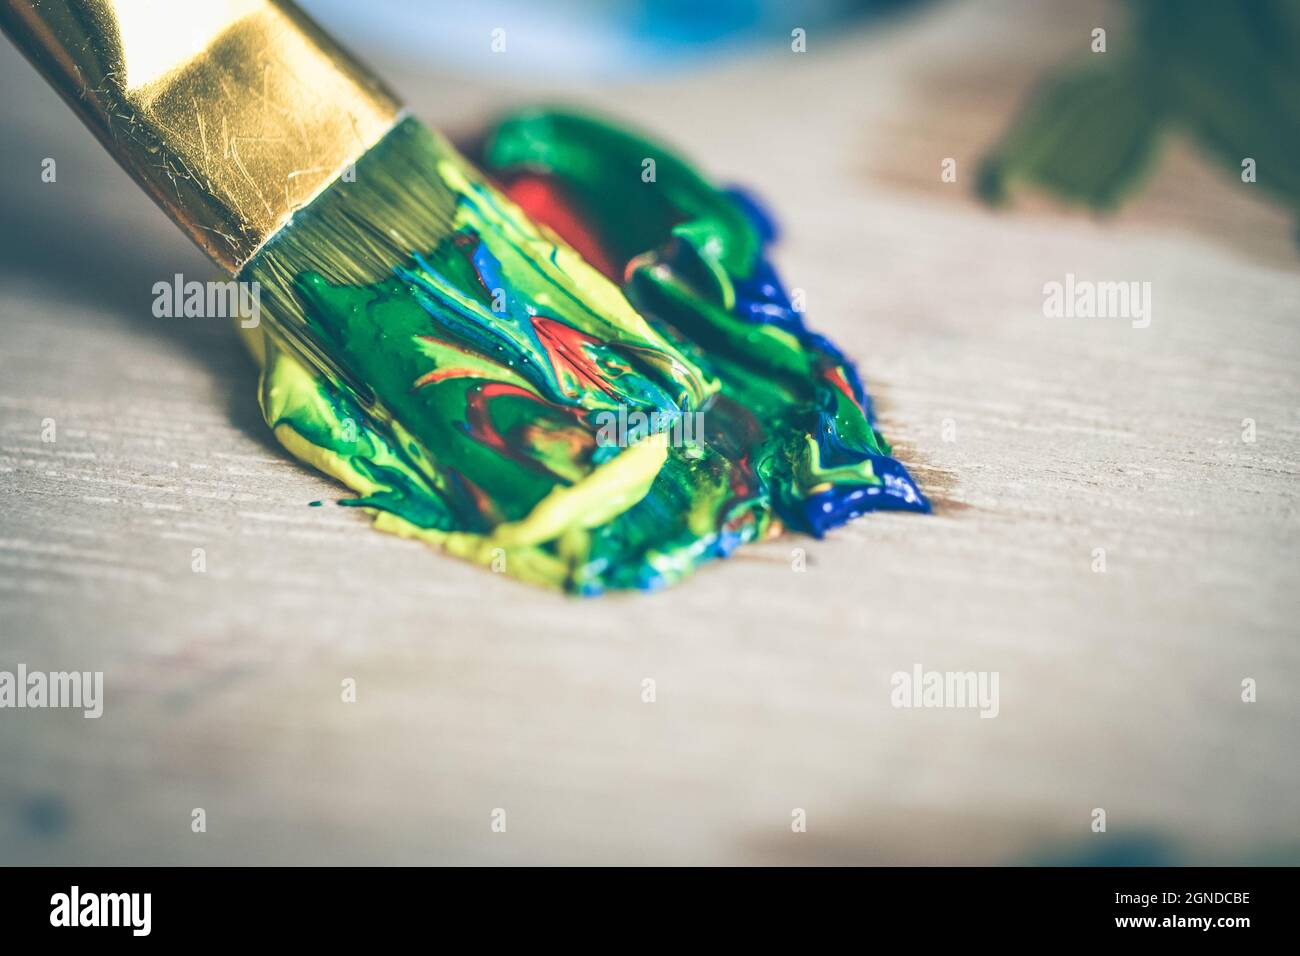 Spennellare la vernice ad olio di diversi colori Foto Stock